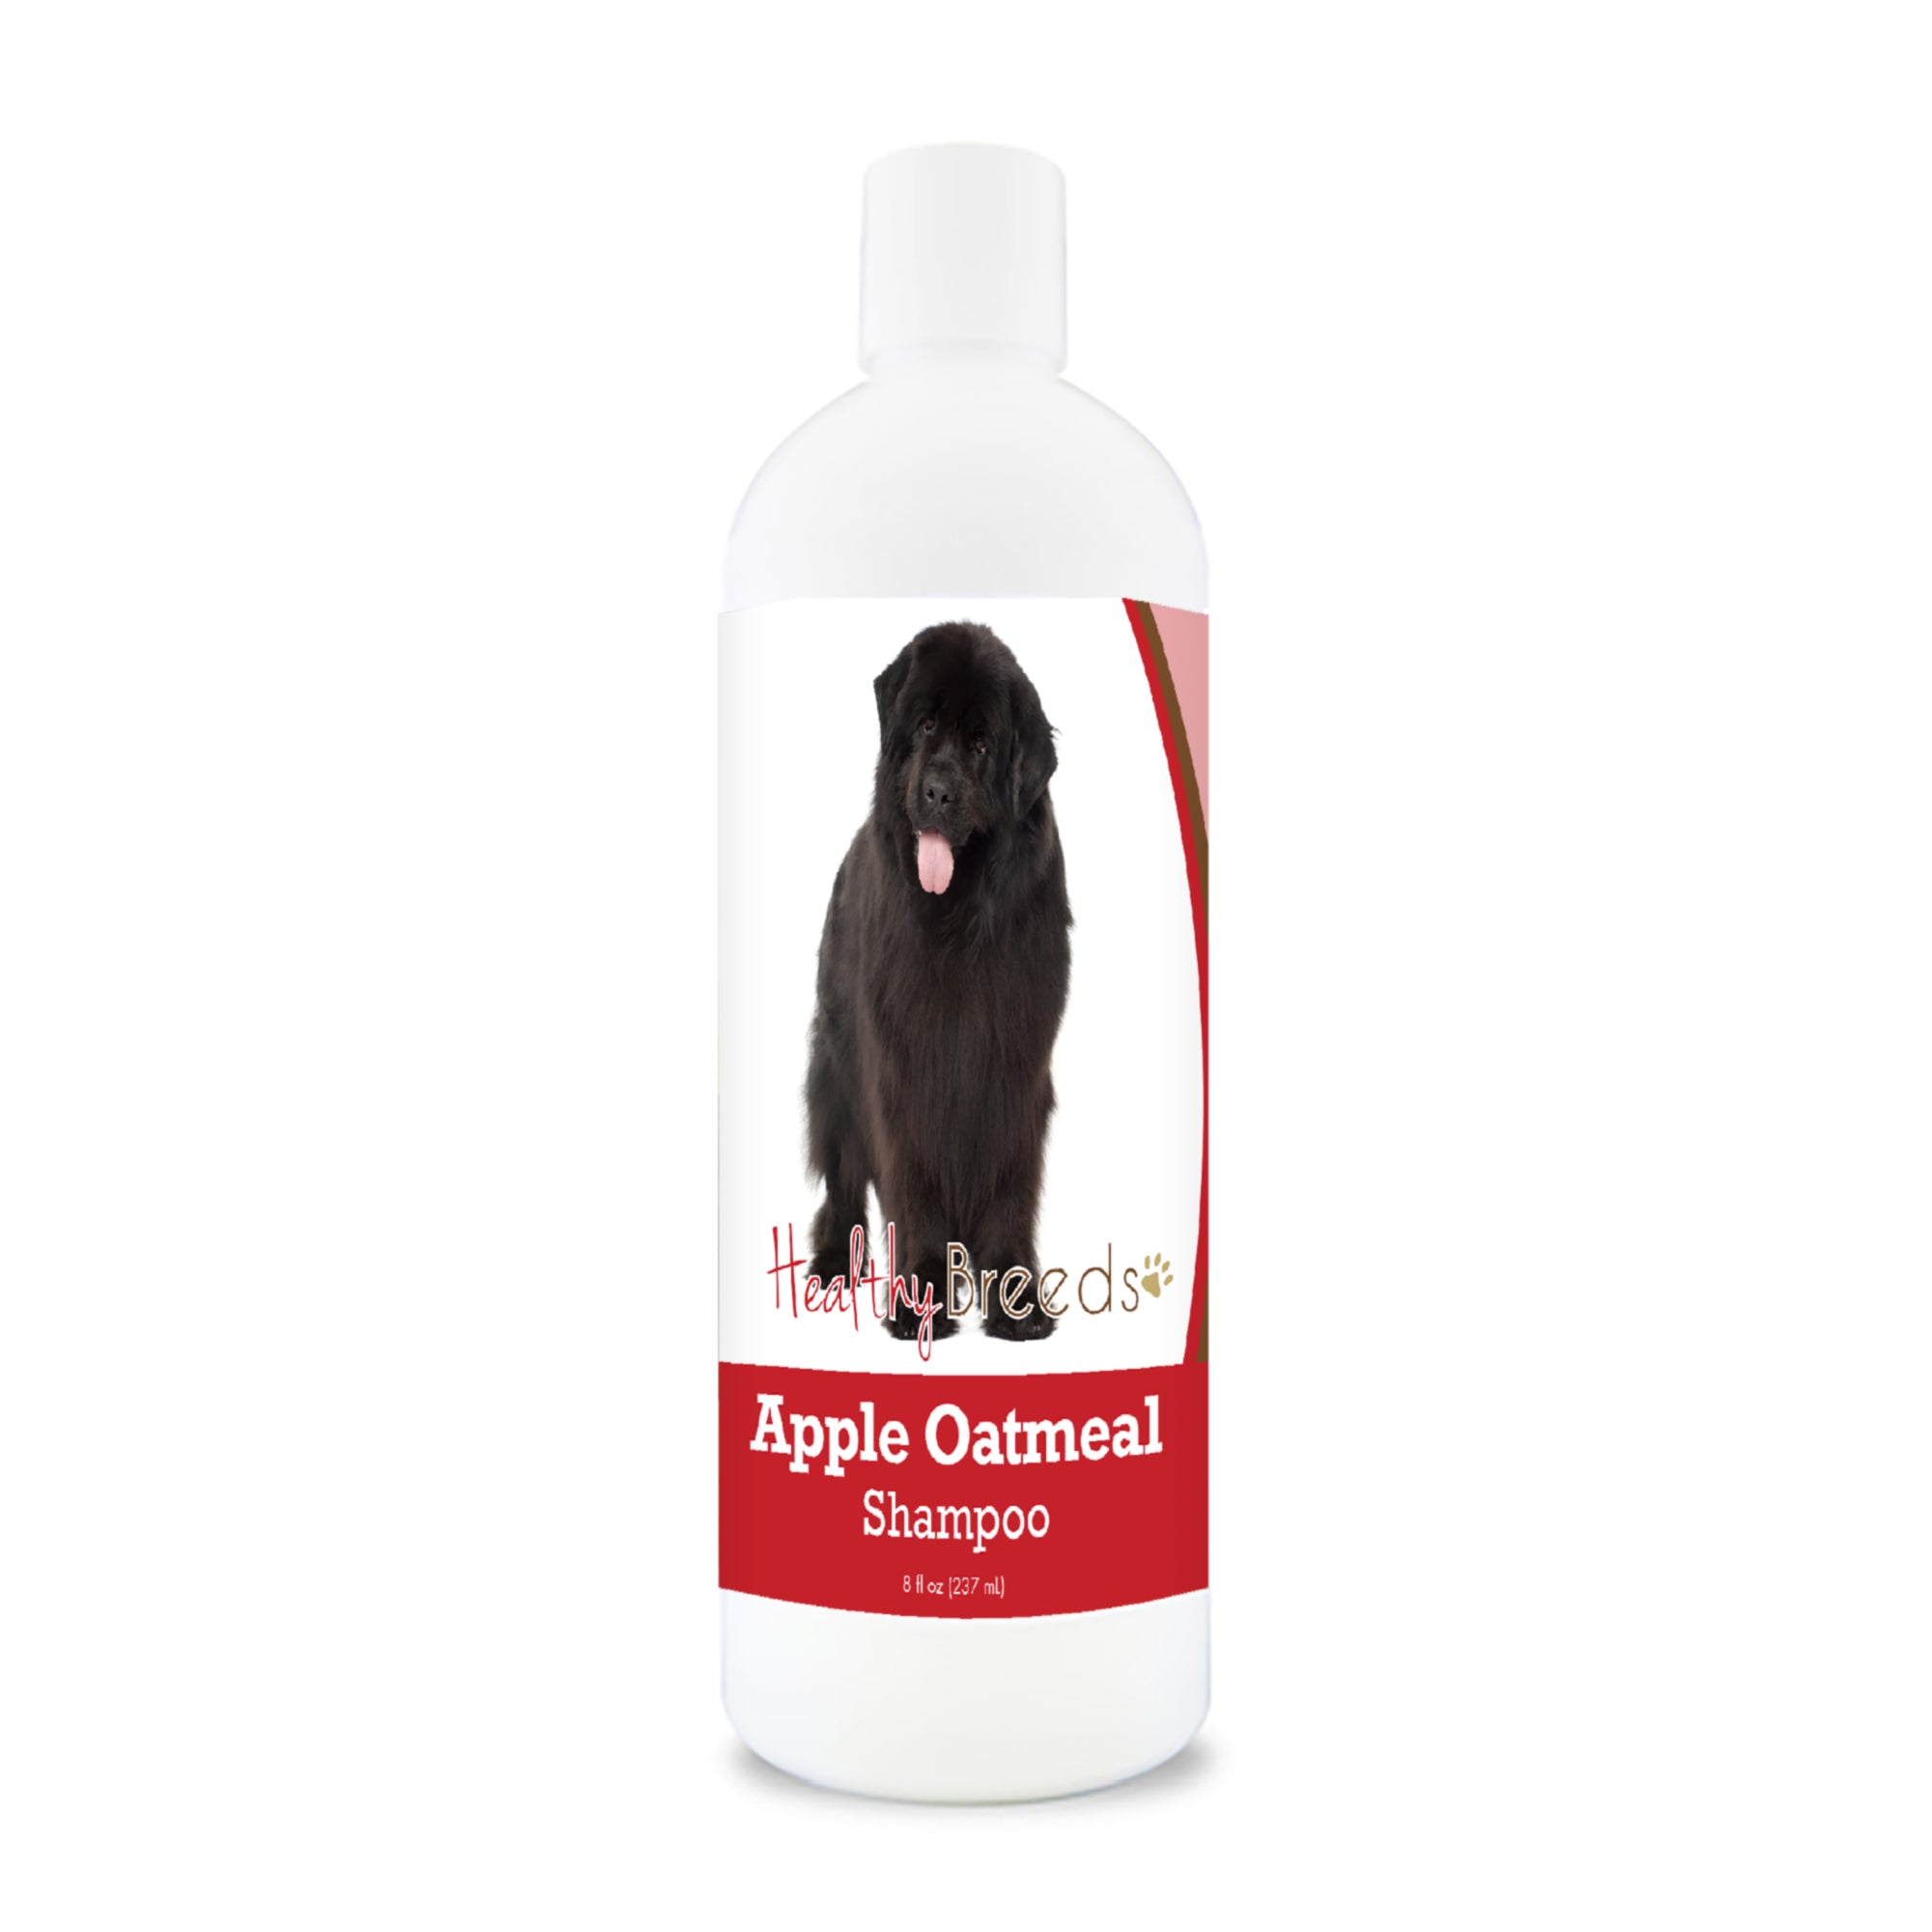 Newfoundland Apple Oatmeal Shampoo 8 oz